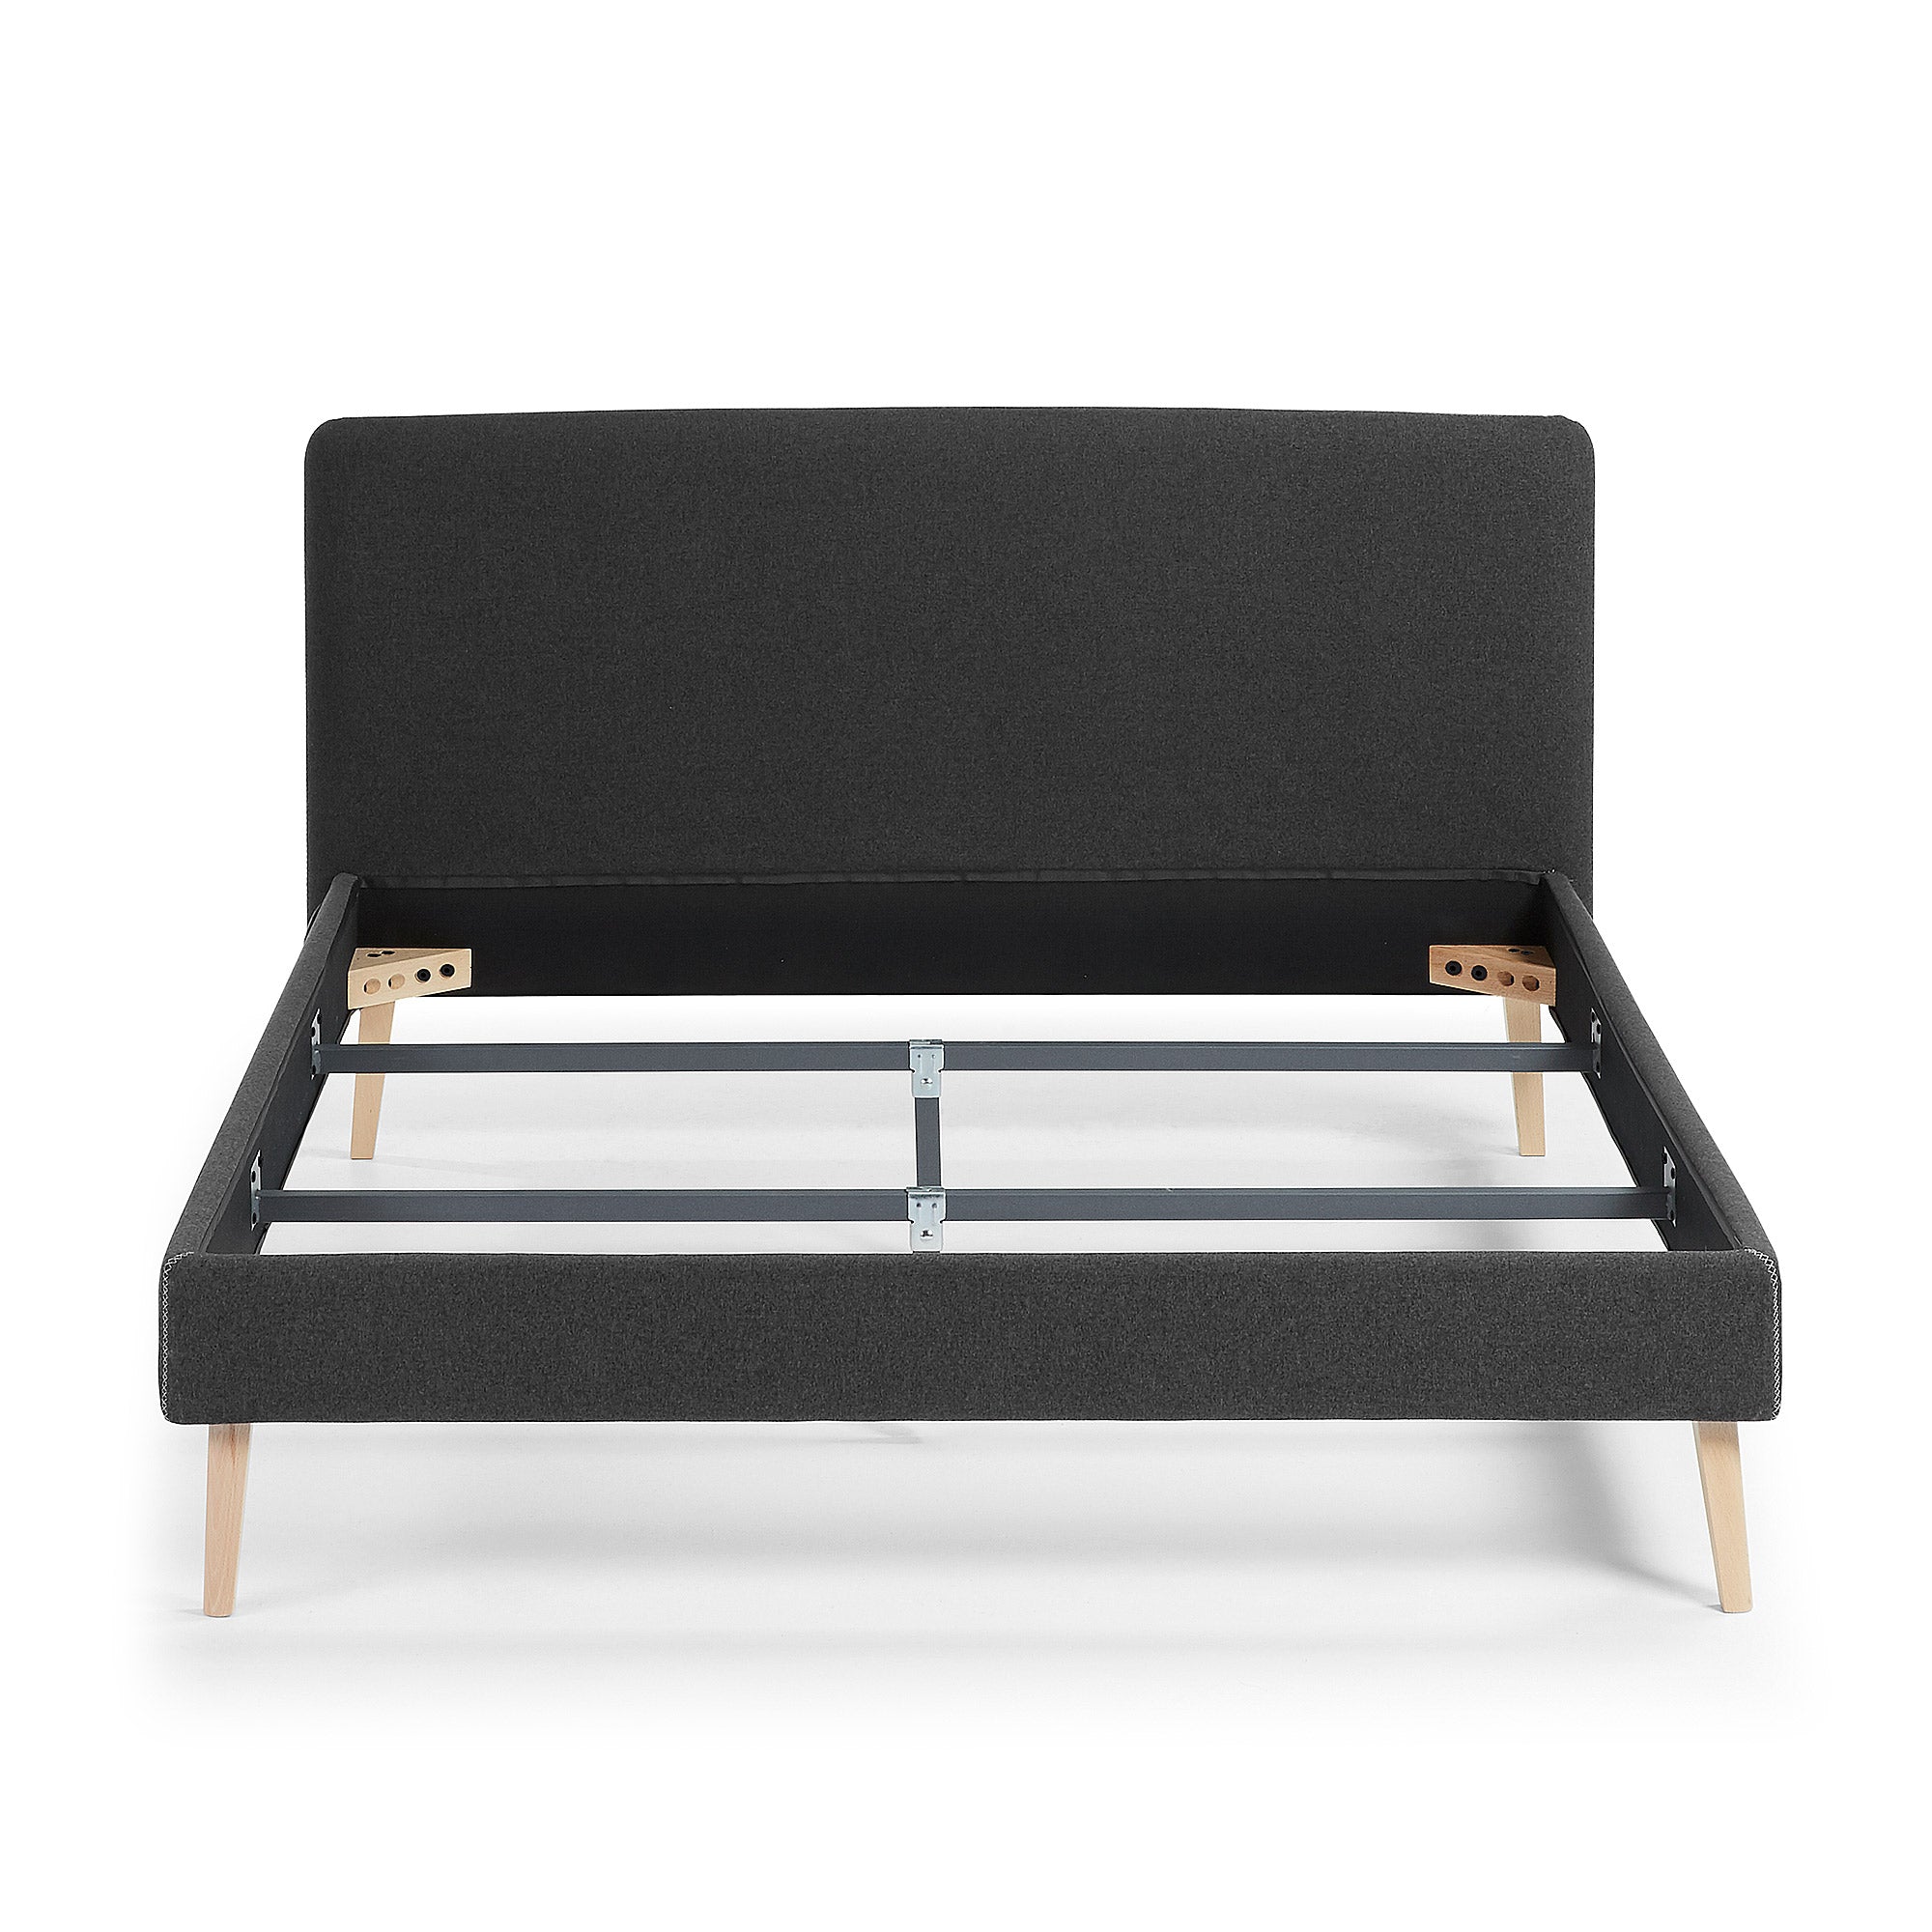 Dyla ágy levehető huzattal, fekete színben, tömör bükkfa lábakkal, 150 x 190 cm-es matrachoz